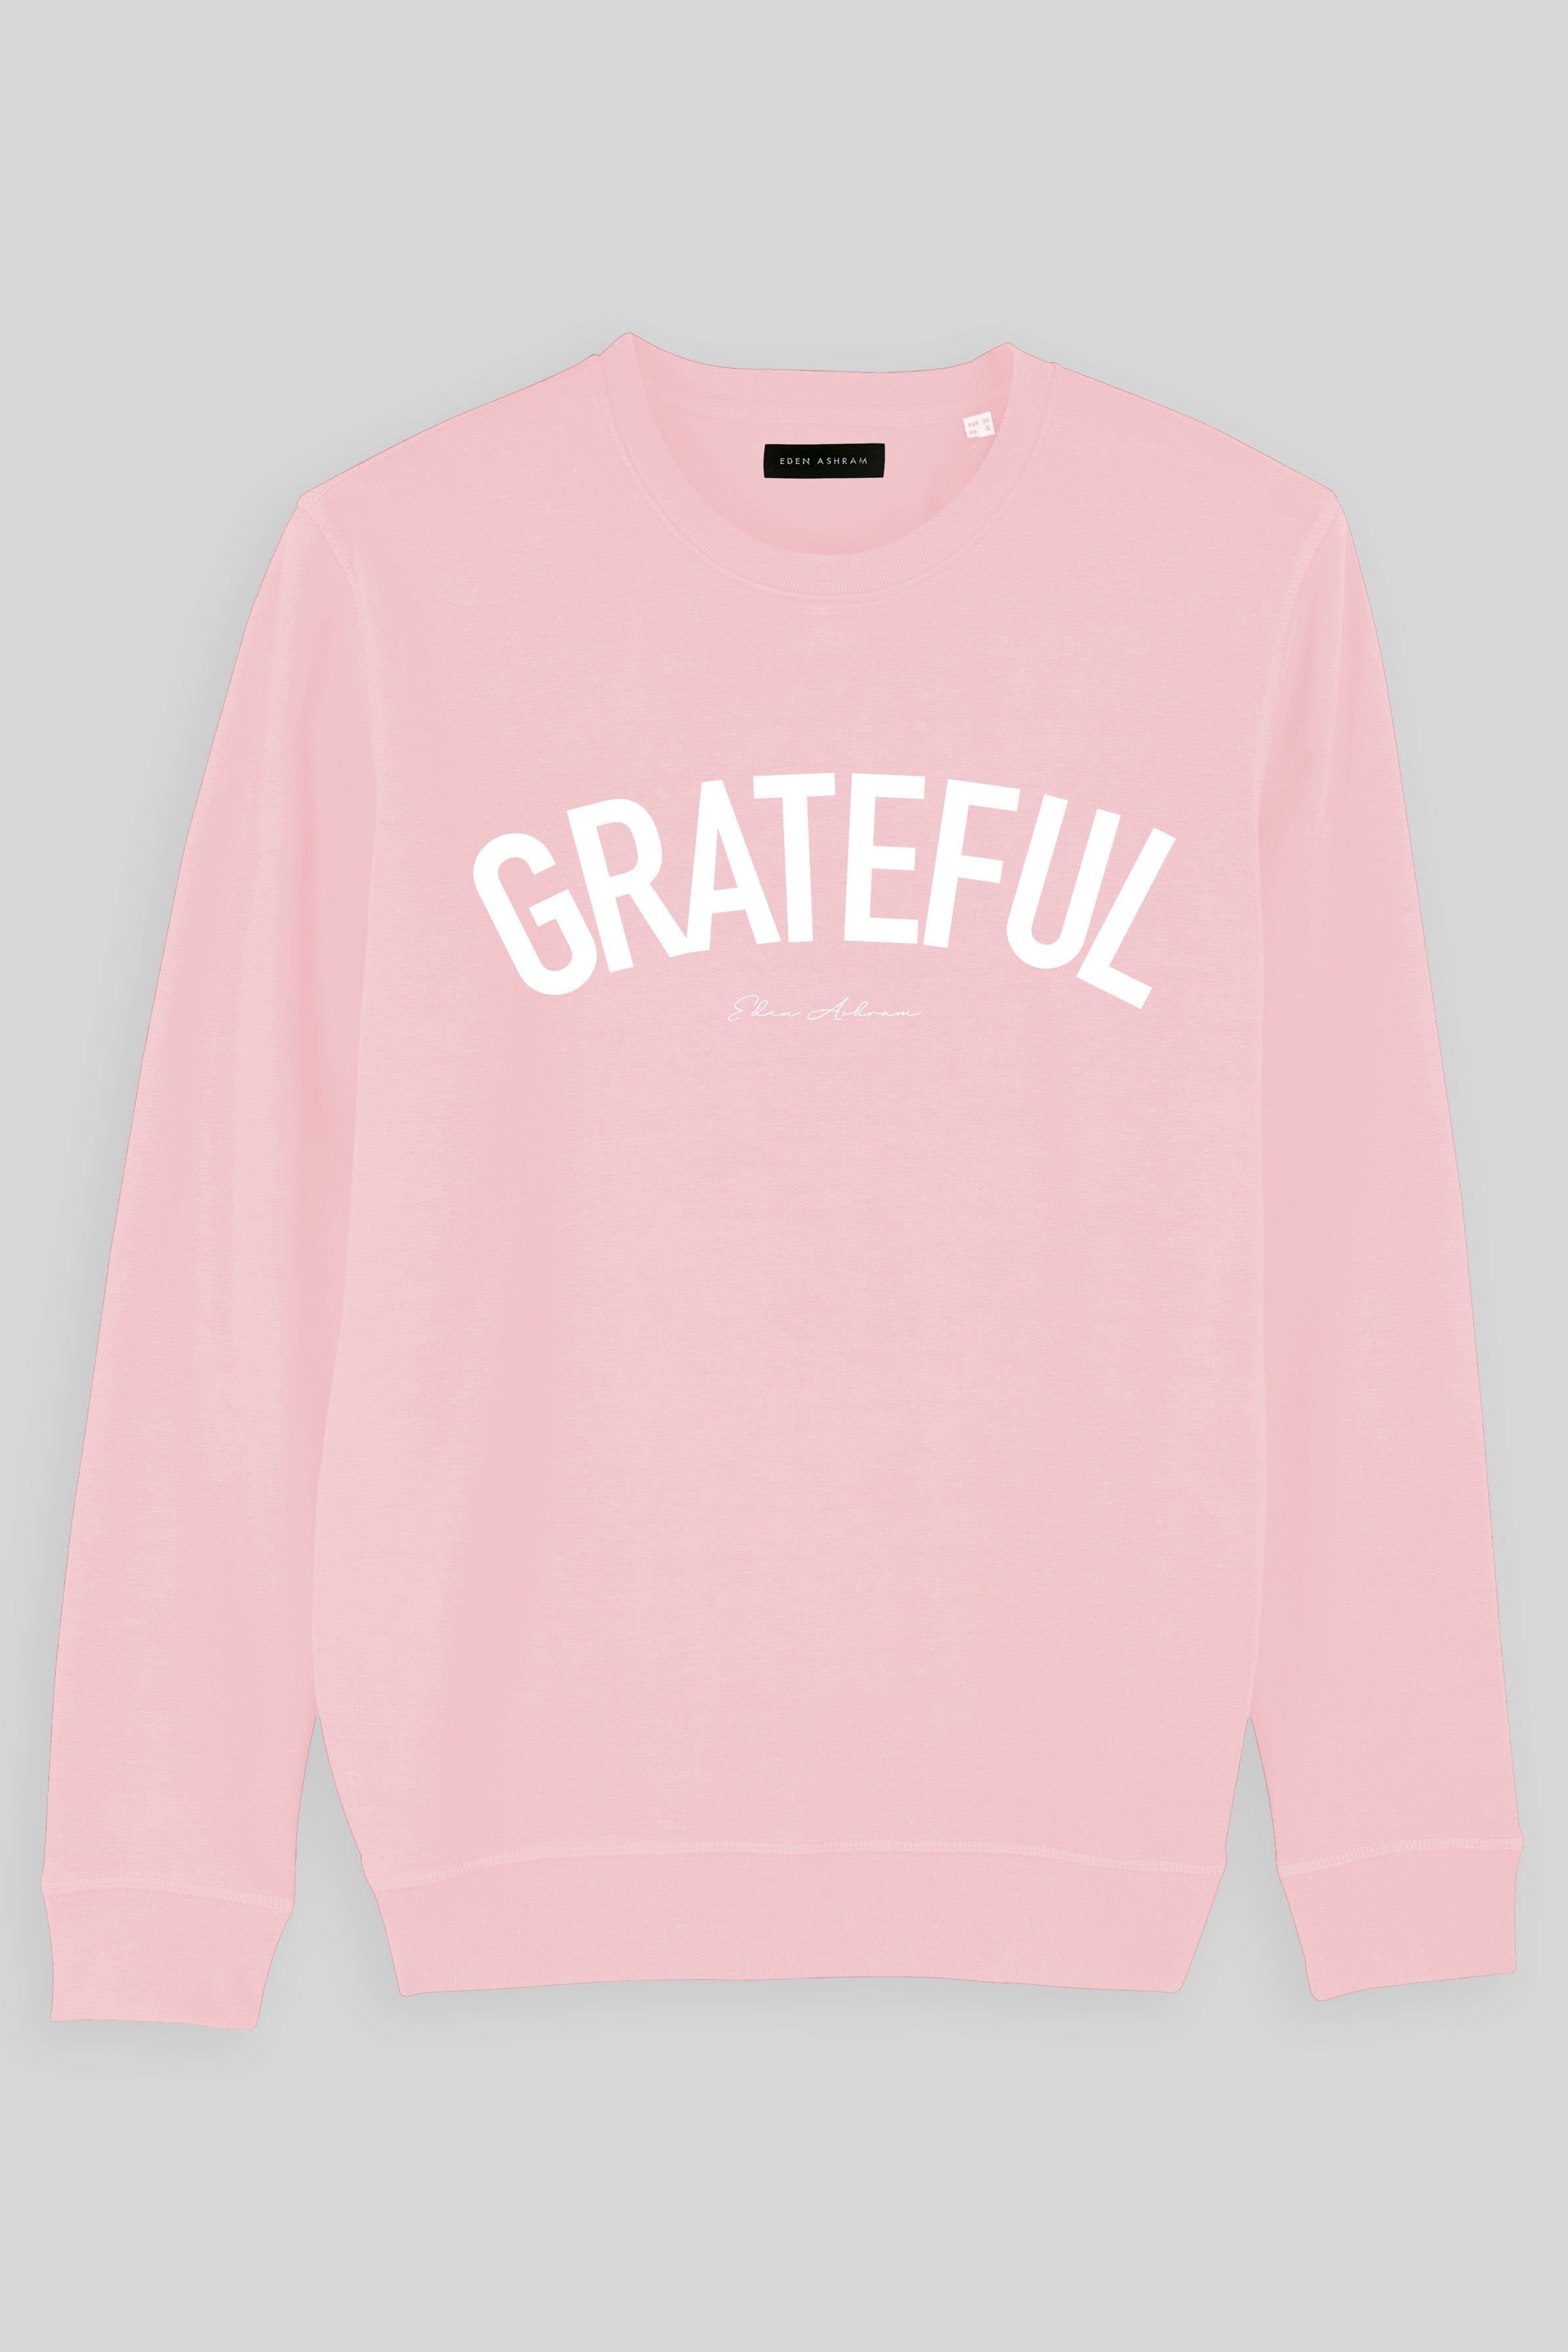 EDEN ASHRAM Grateful Premium Crew Neck Sweatshirt Cotton Pink